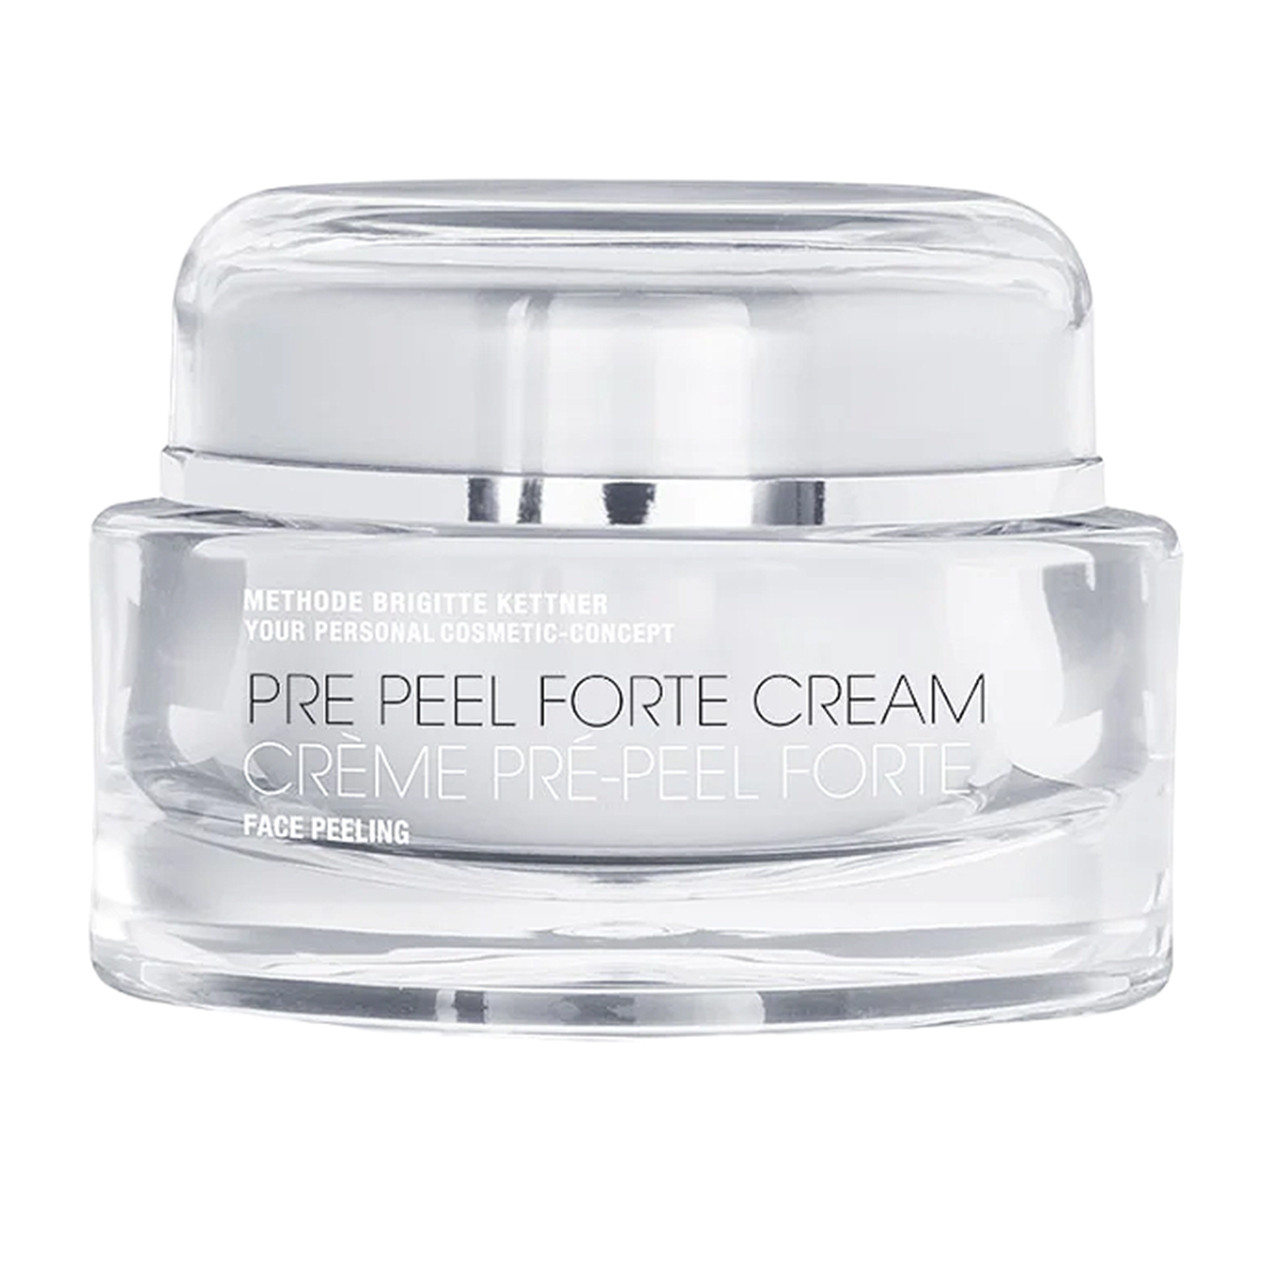 MBK Skincare Pre-Peel Forte Cream - 1.69 oz